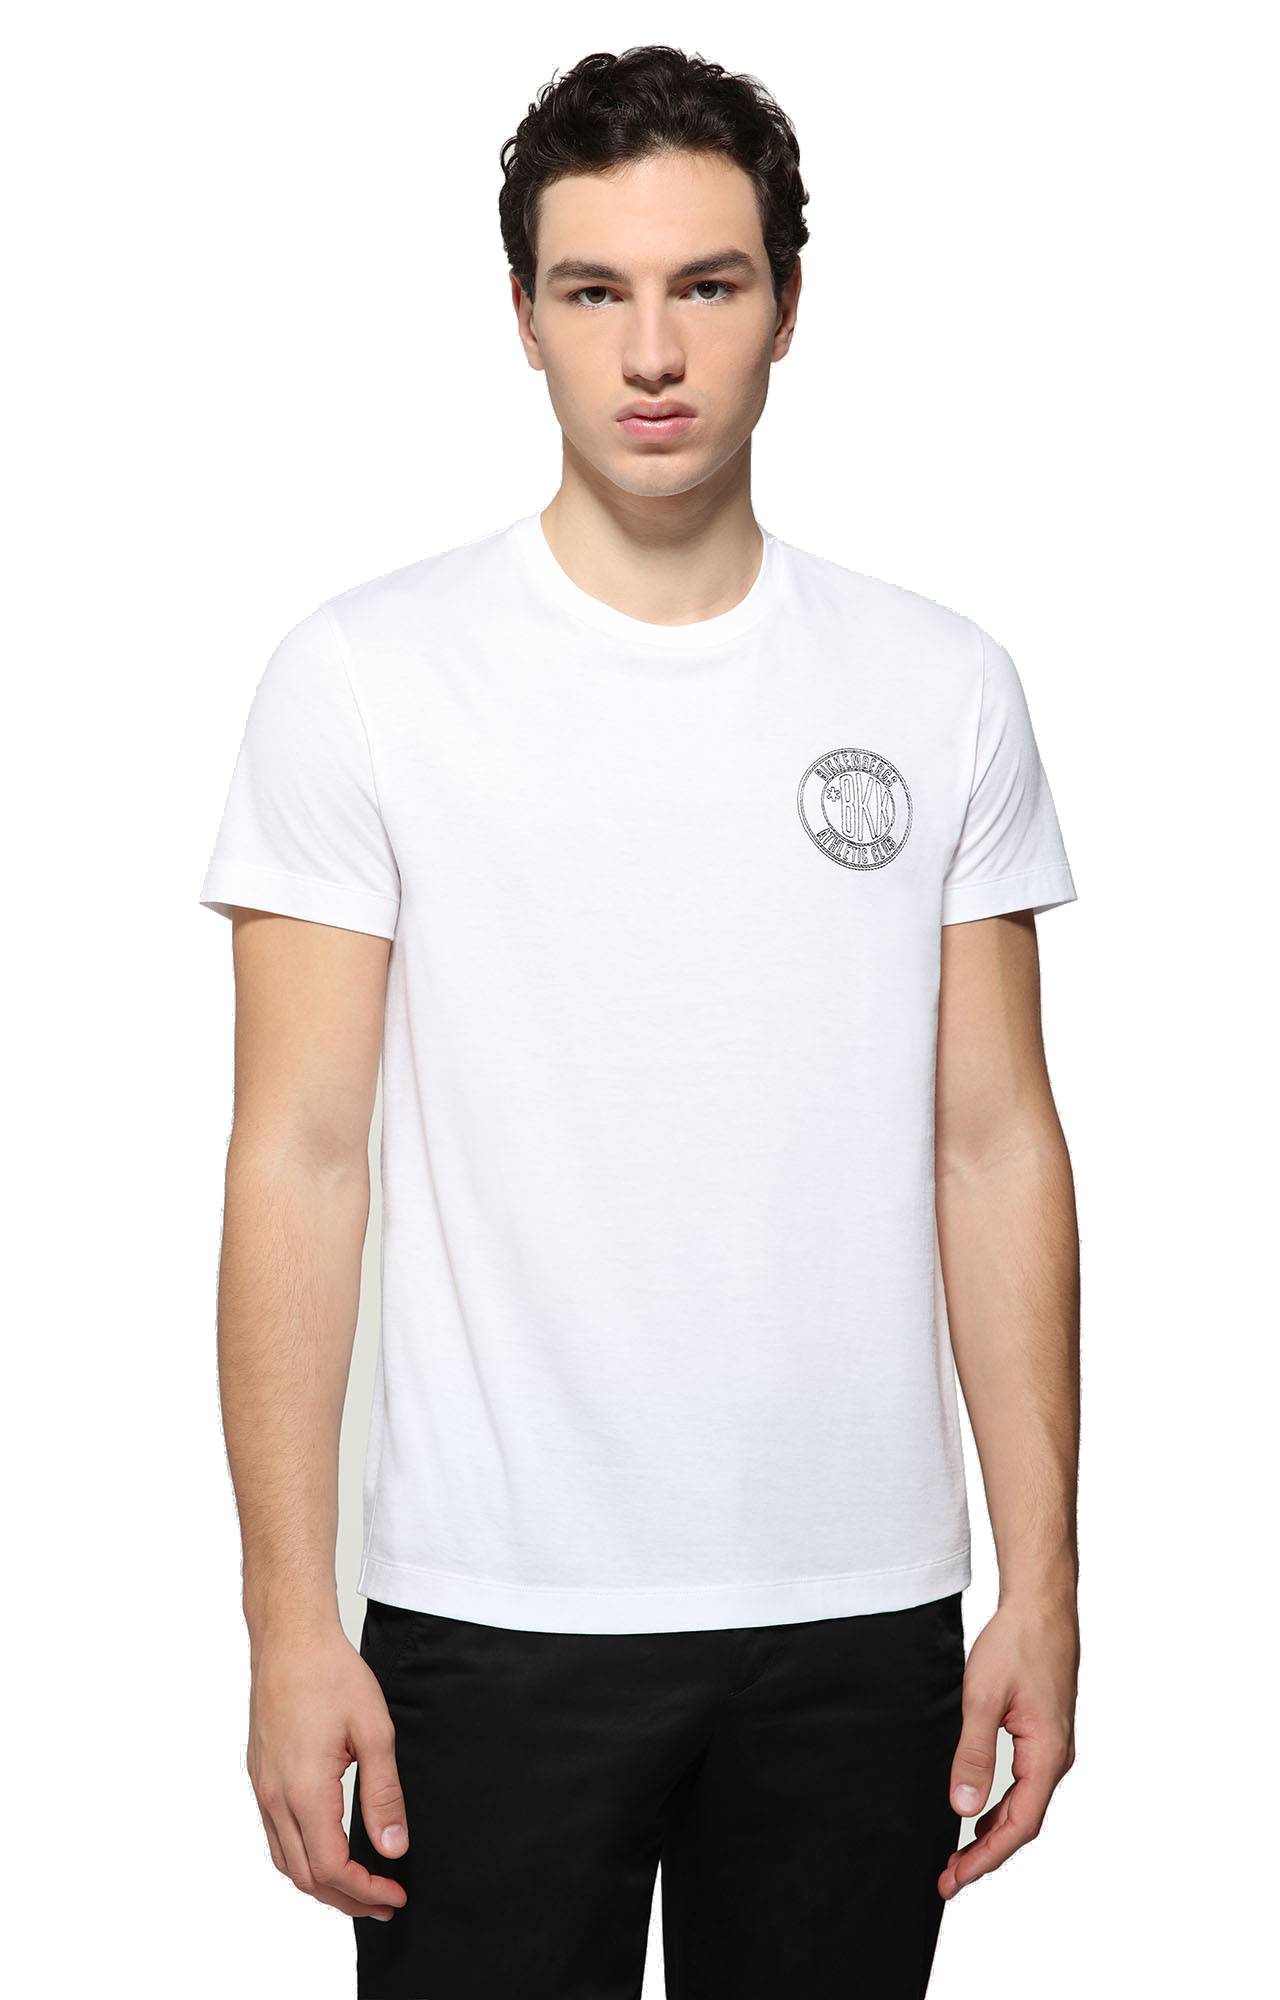 Camiseta Dirk Bikkembergs de Algodón de color Gris para hombre Hombre Ropa de Camisetas y polos de Camisetas de manga corta 